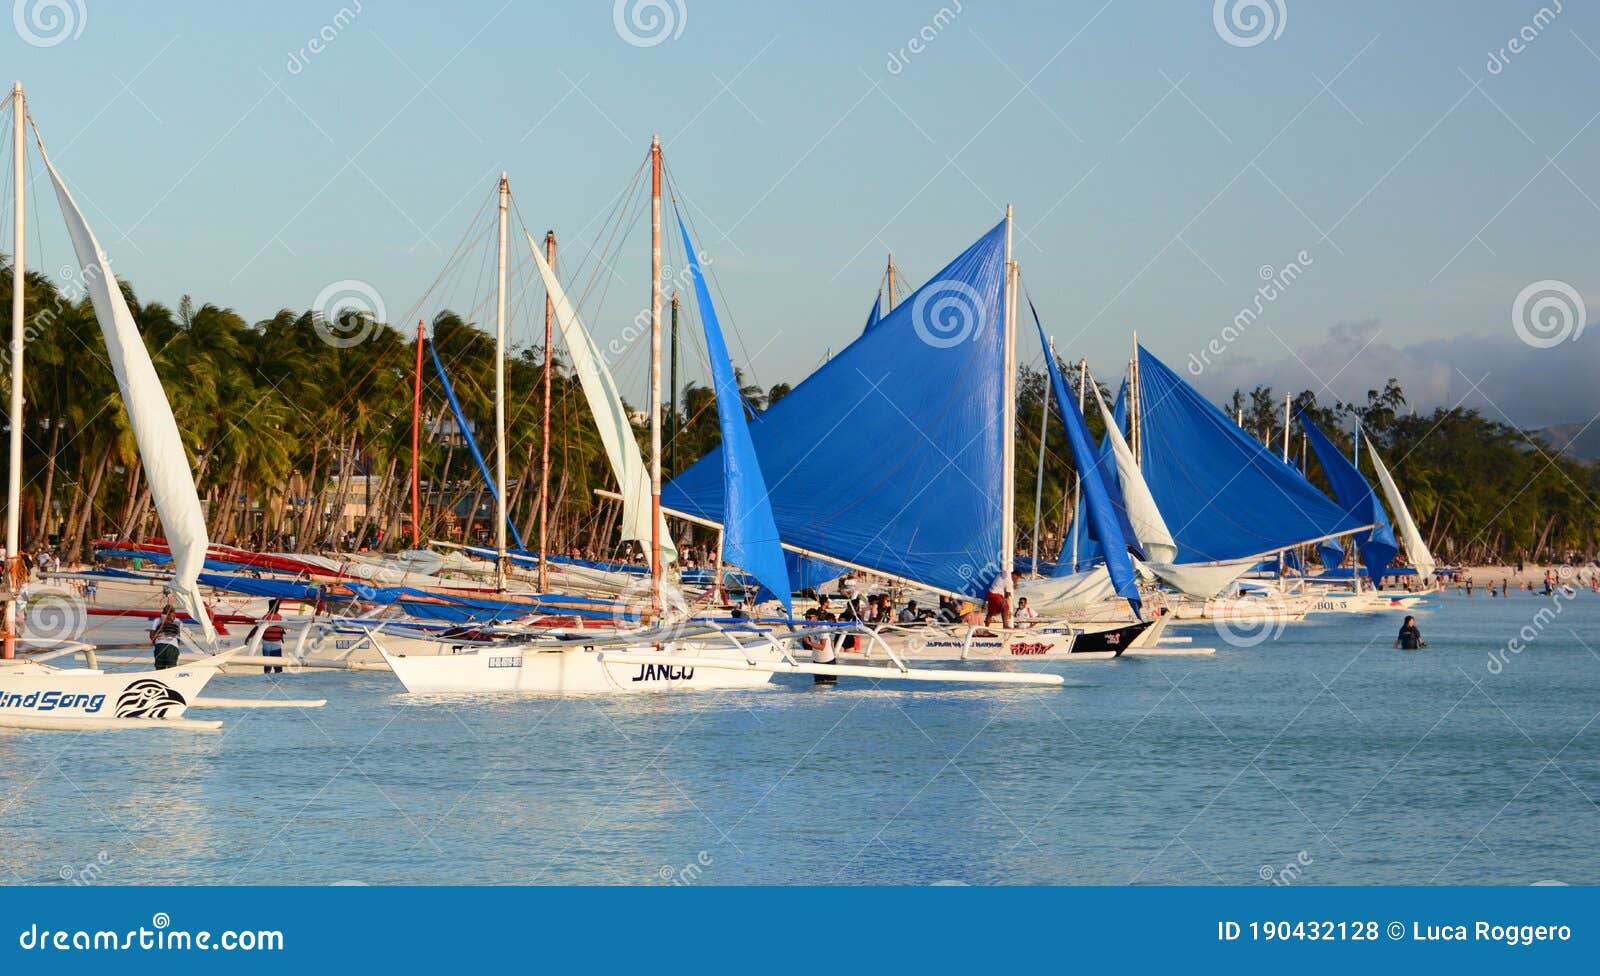 sailboat in tagalog